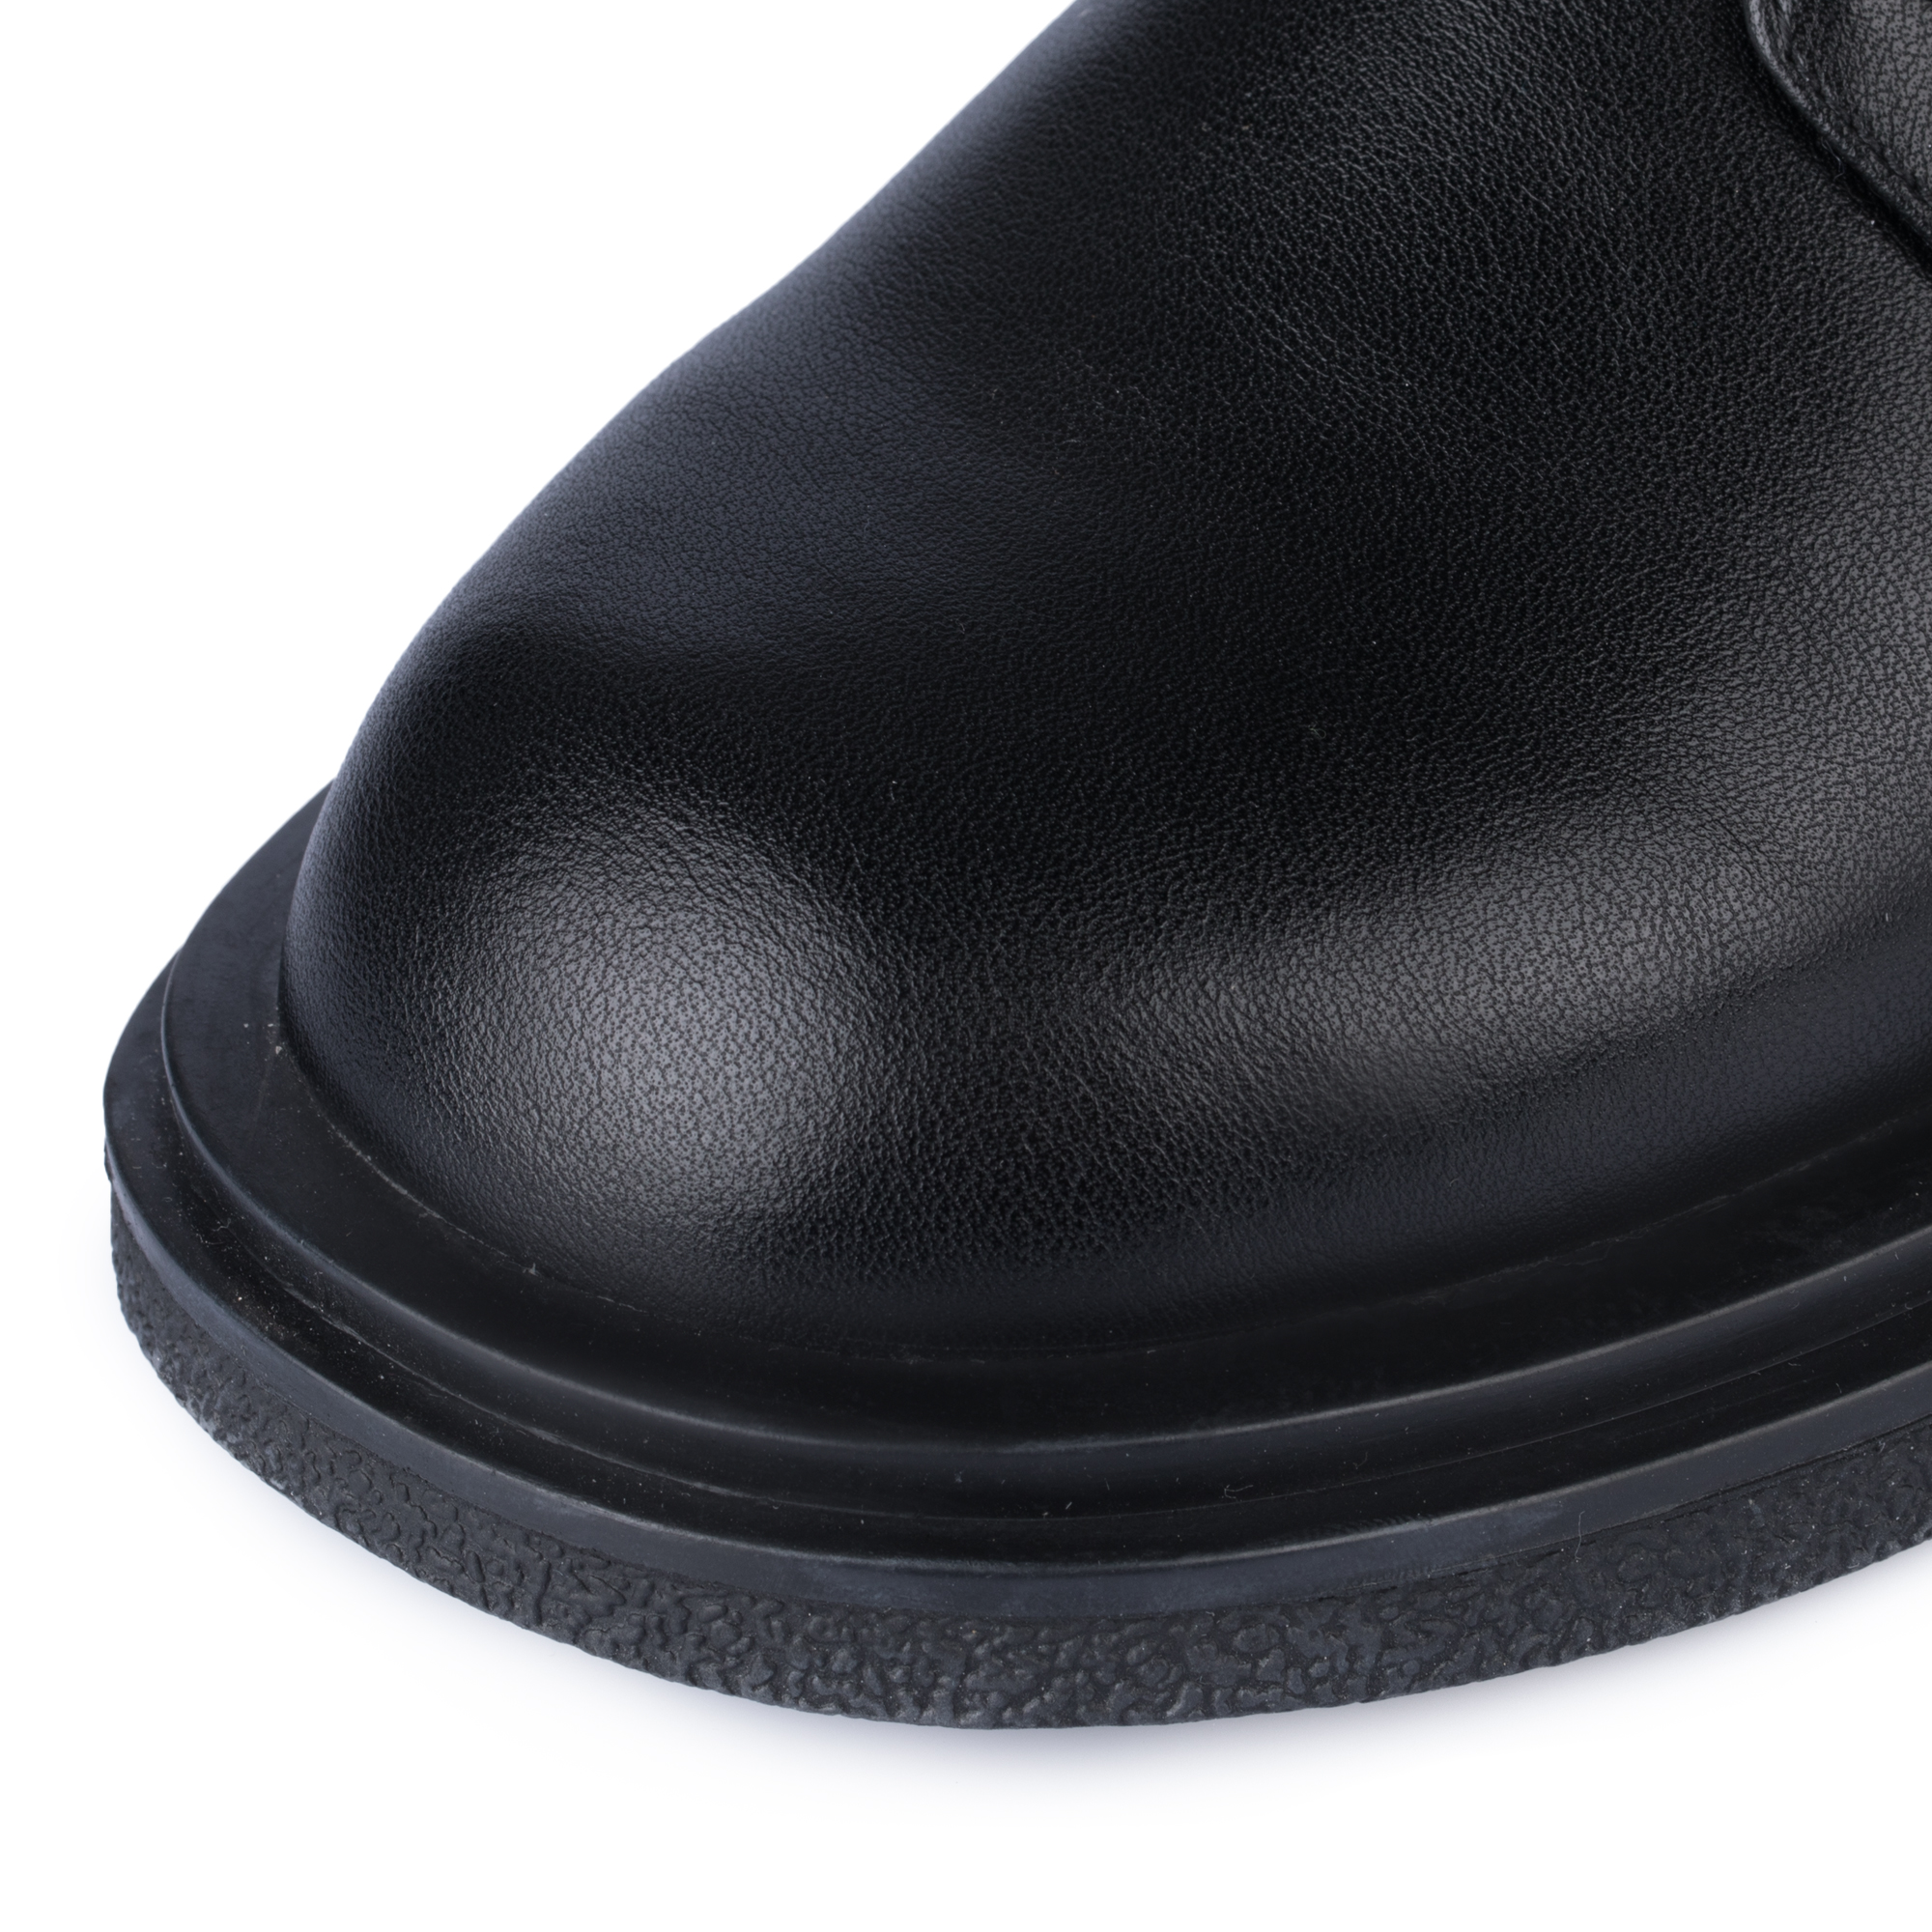 Ботинки Thomas Munz 098-704B-5602, цвет черный, размер 38 - фото 6